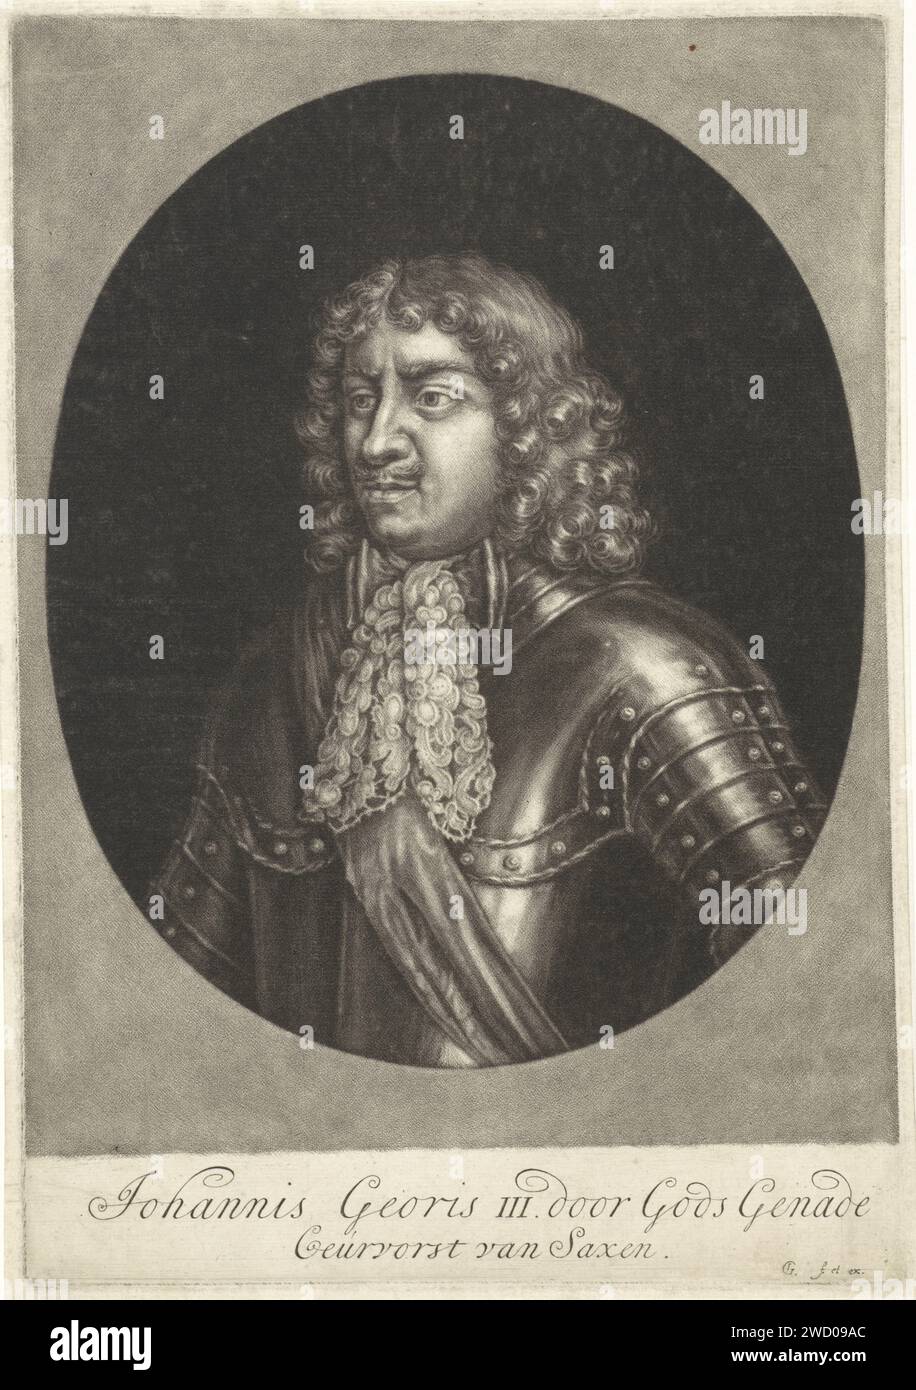 Portrait de Johan Georg III van Saksen, Jacob Gole, 1670 - 1724 estampe Johan Georg III, électeur de Saxe. Il porte un harnais avec un col en dentelle. Gravure sur papier Amsterdam Banque D'Images